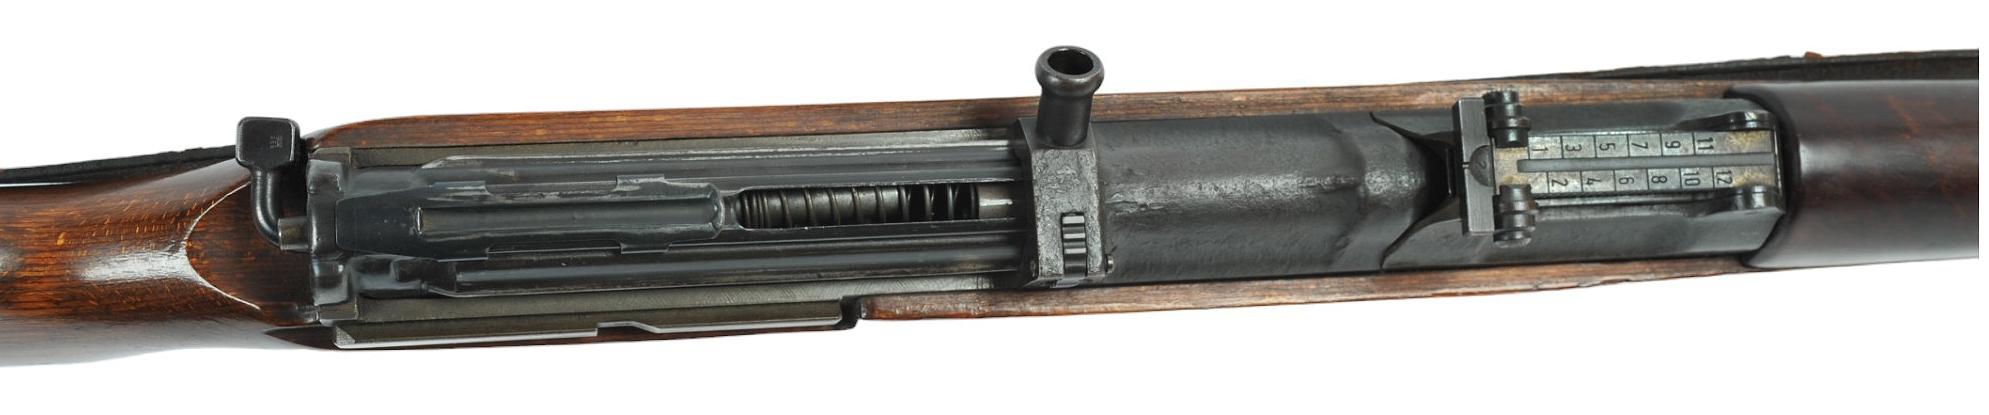 German Military WWII era G/K-43 8mm Semi-Automatic Rifle - FFL # 9658J (OWM1)